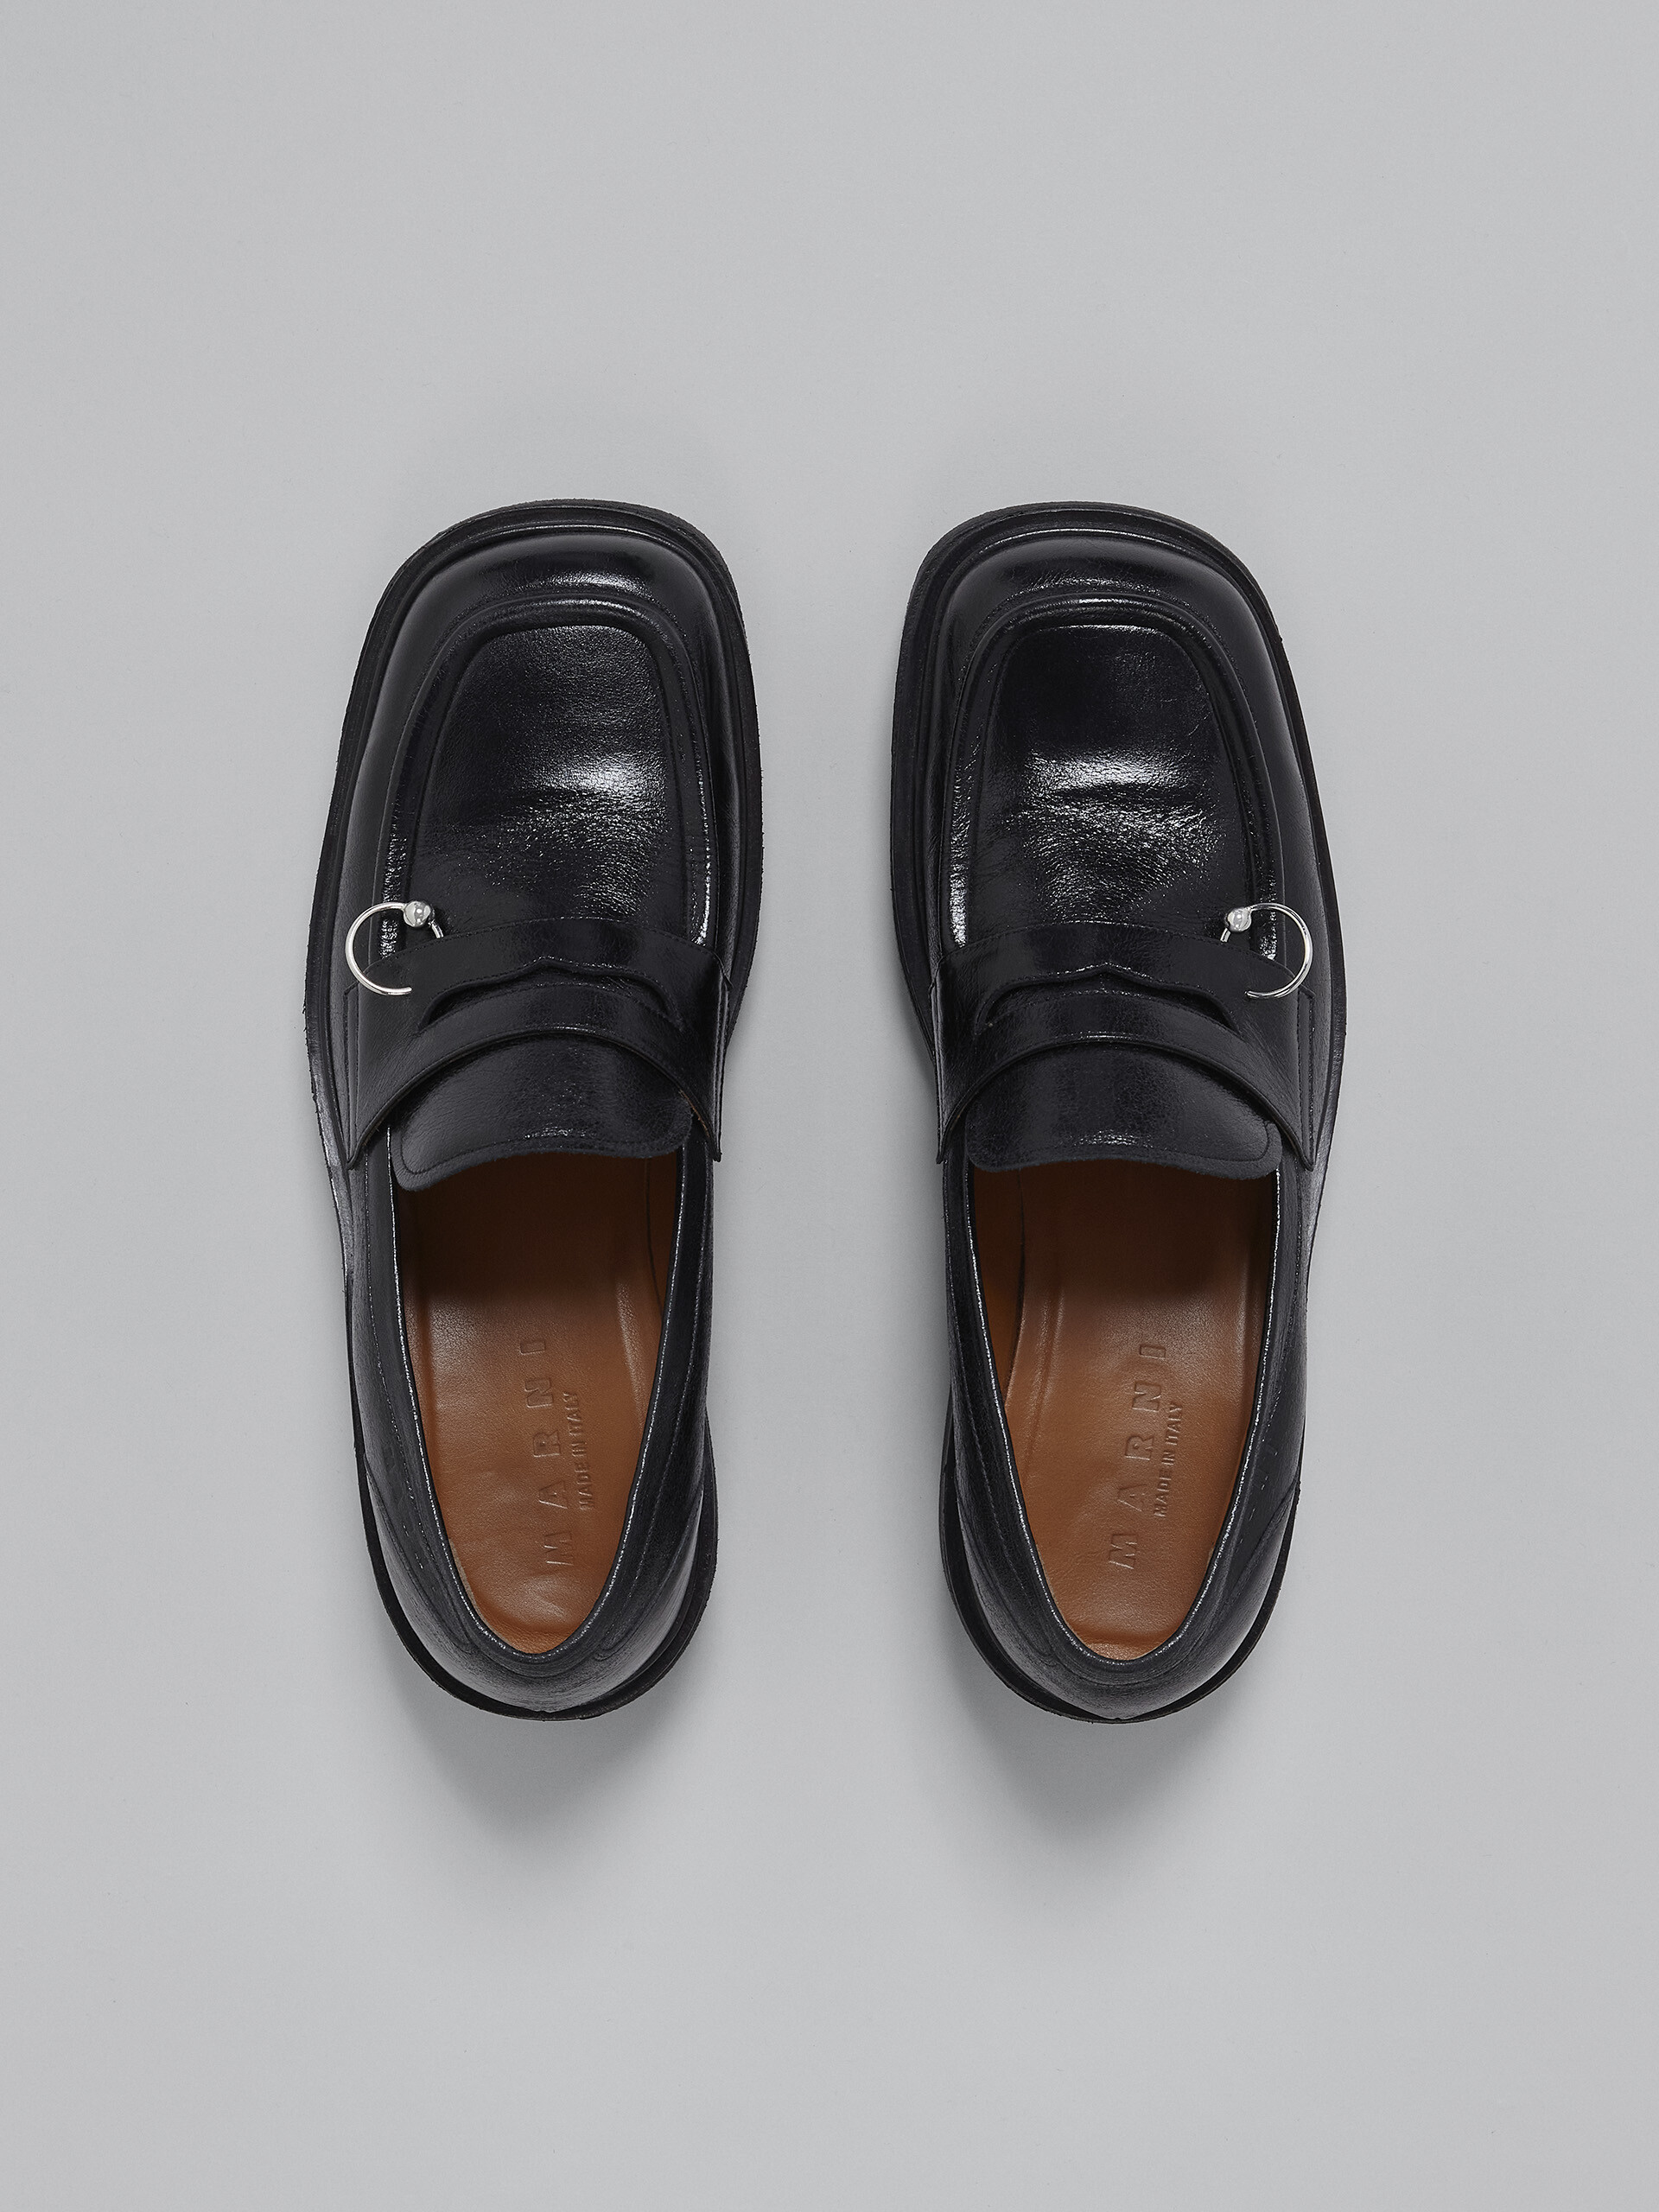 Mocasín de piel brillante negra - Zapatos con cordones - Image 4